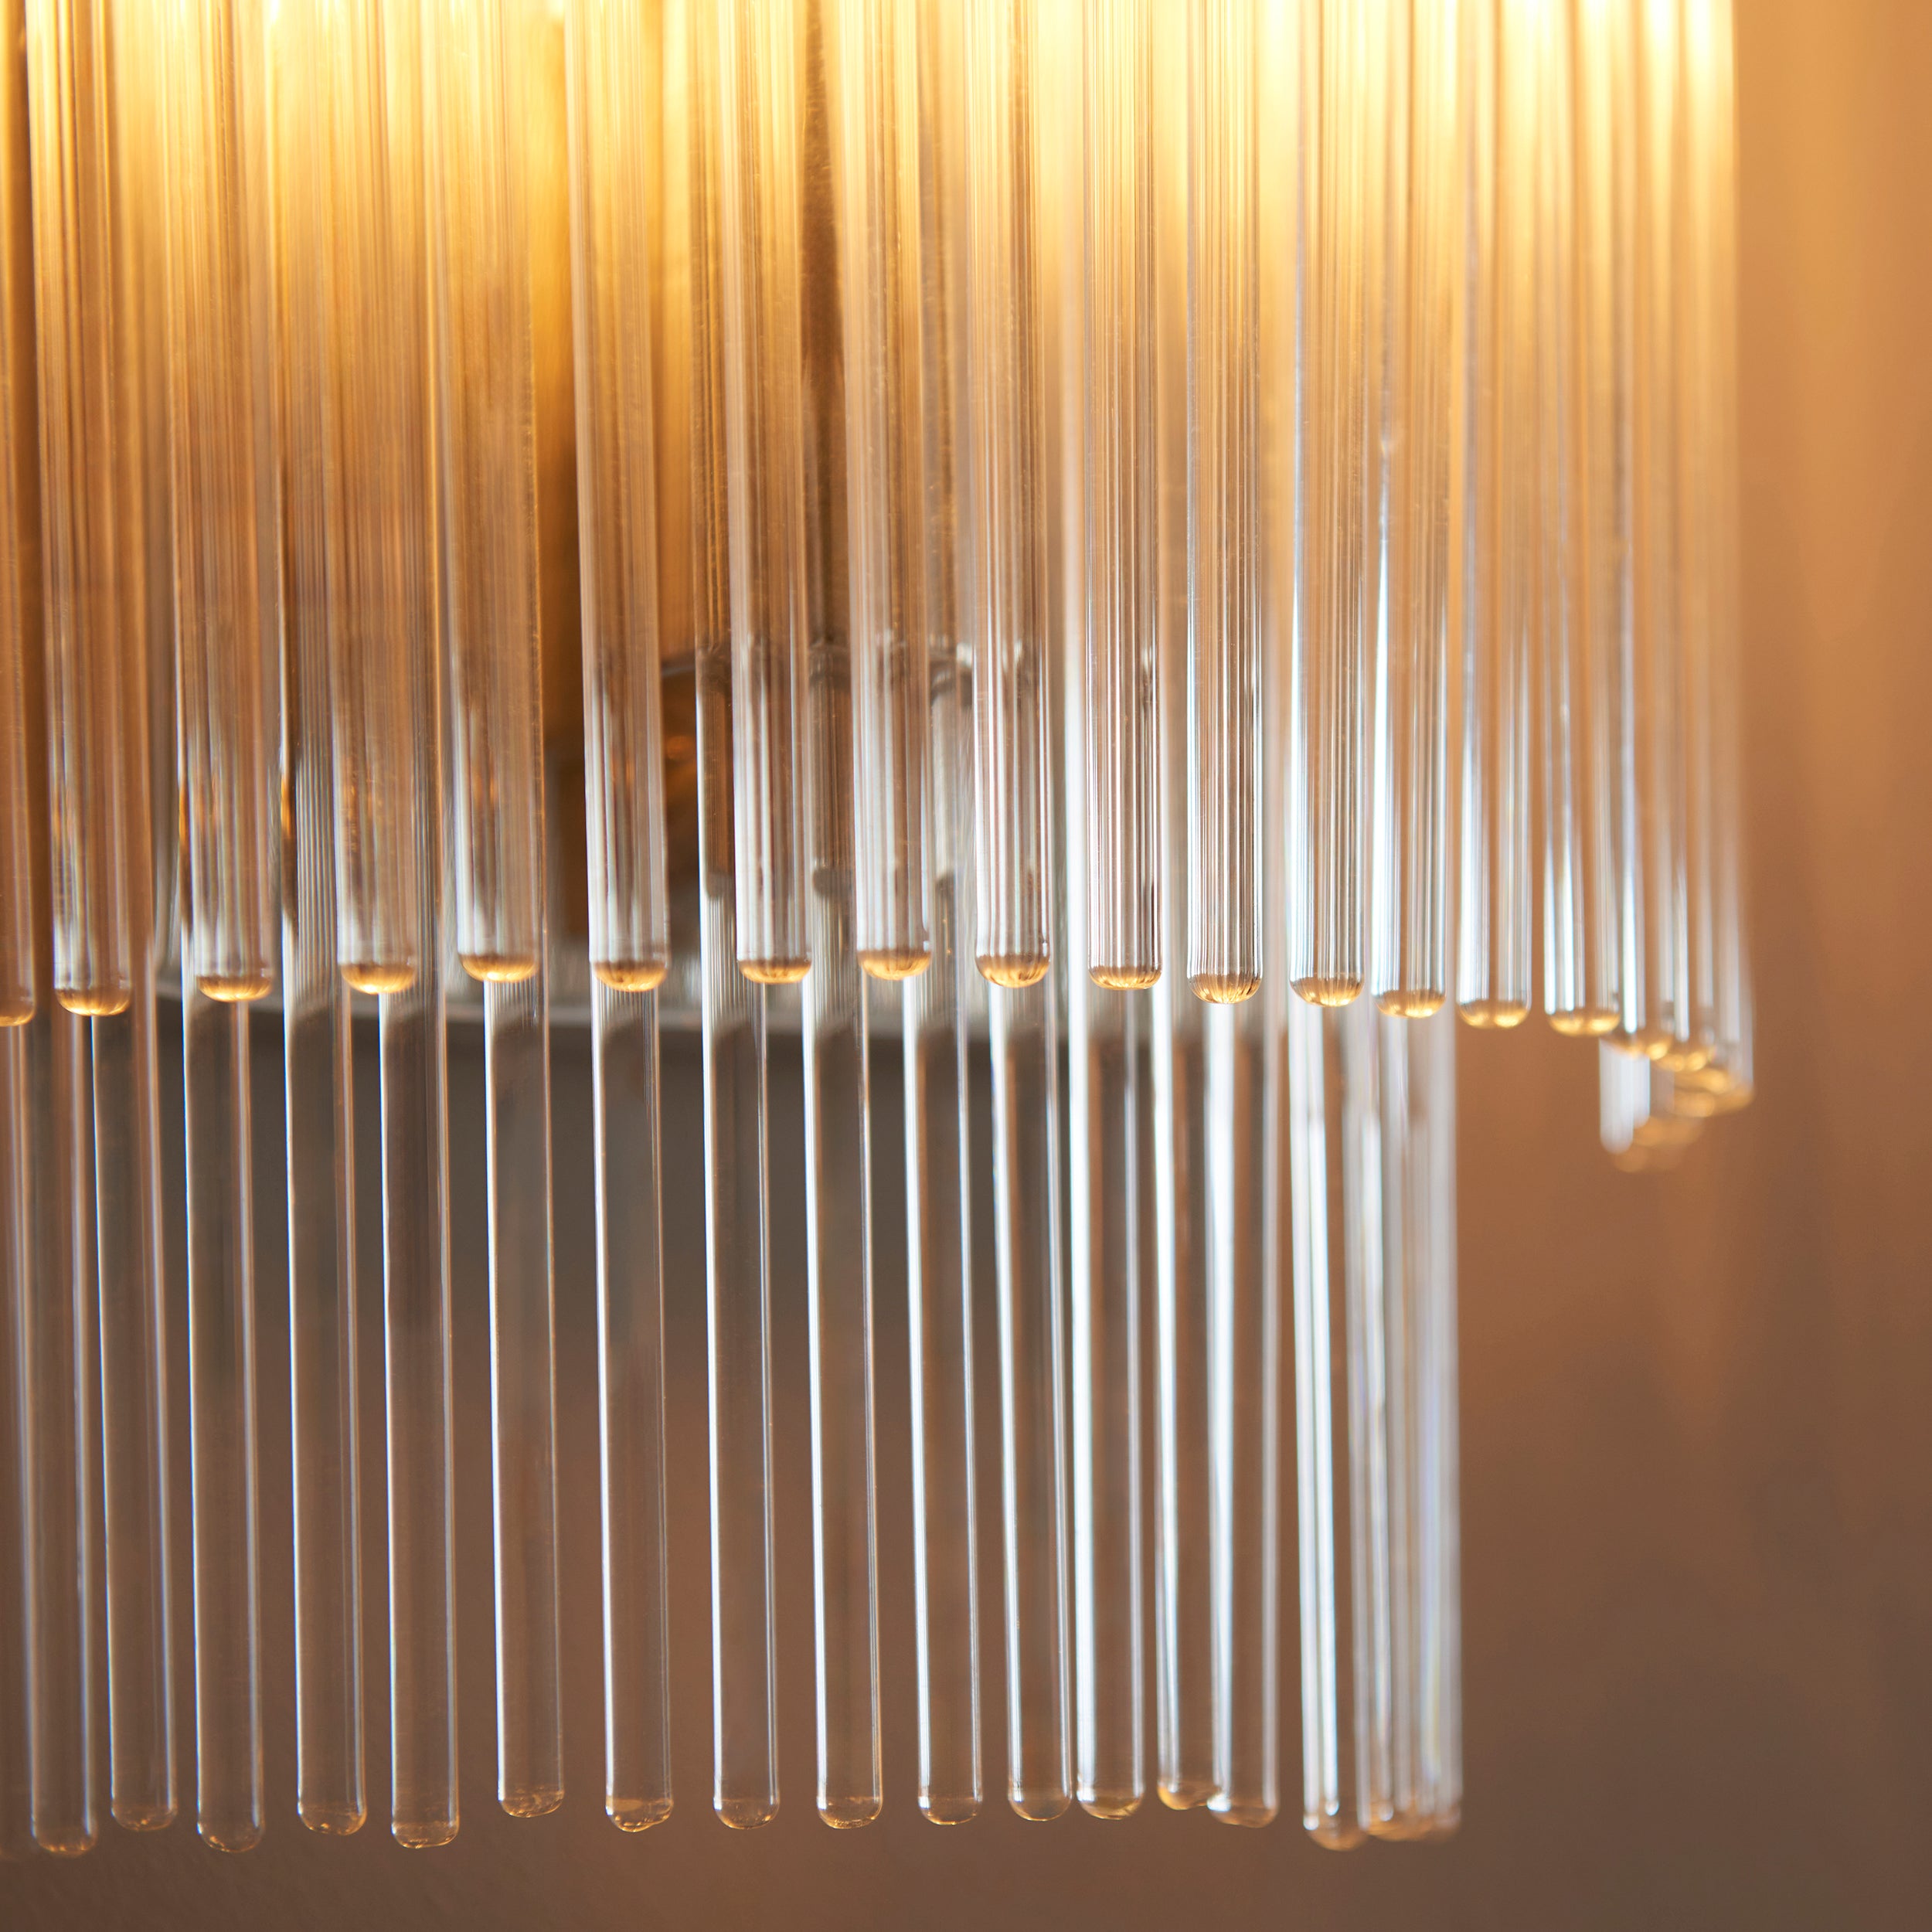 Marietta Polished Nickel & Glass Rods Wall Light